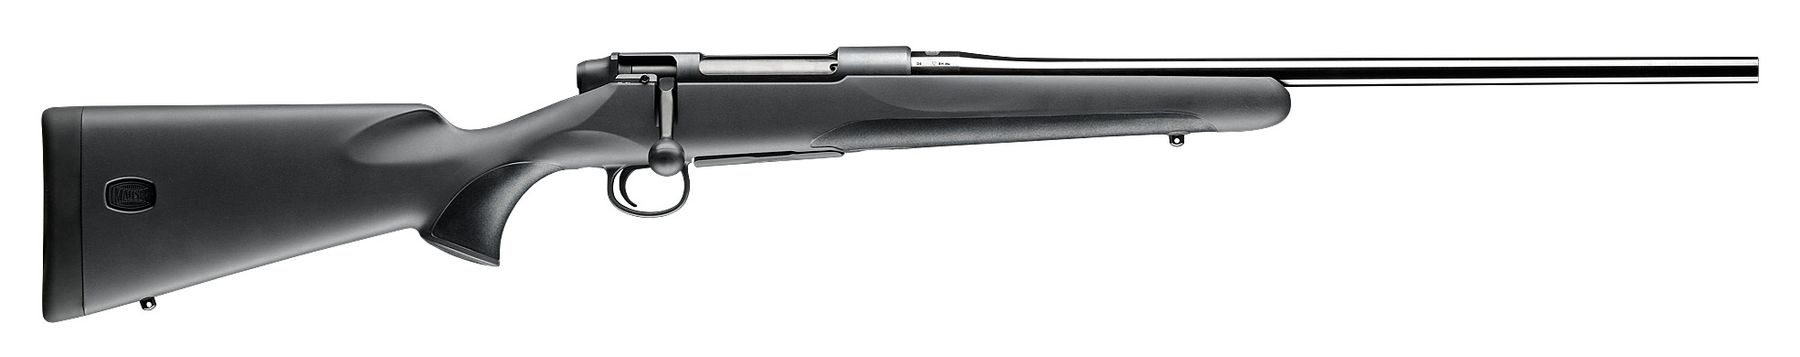 Mauser m18 270w